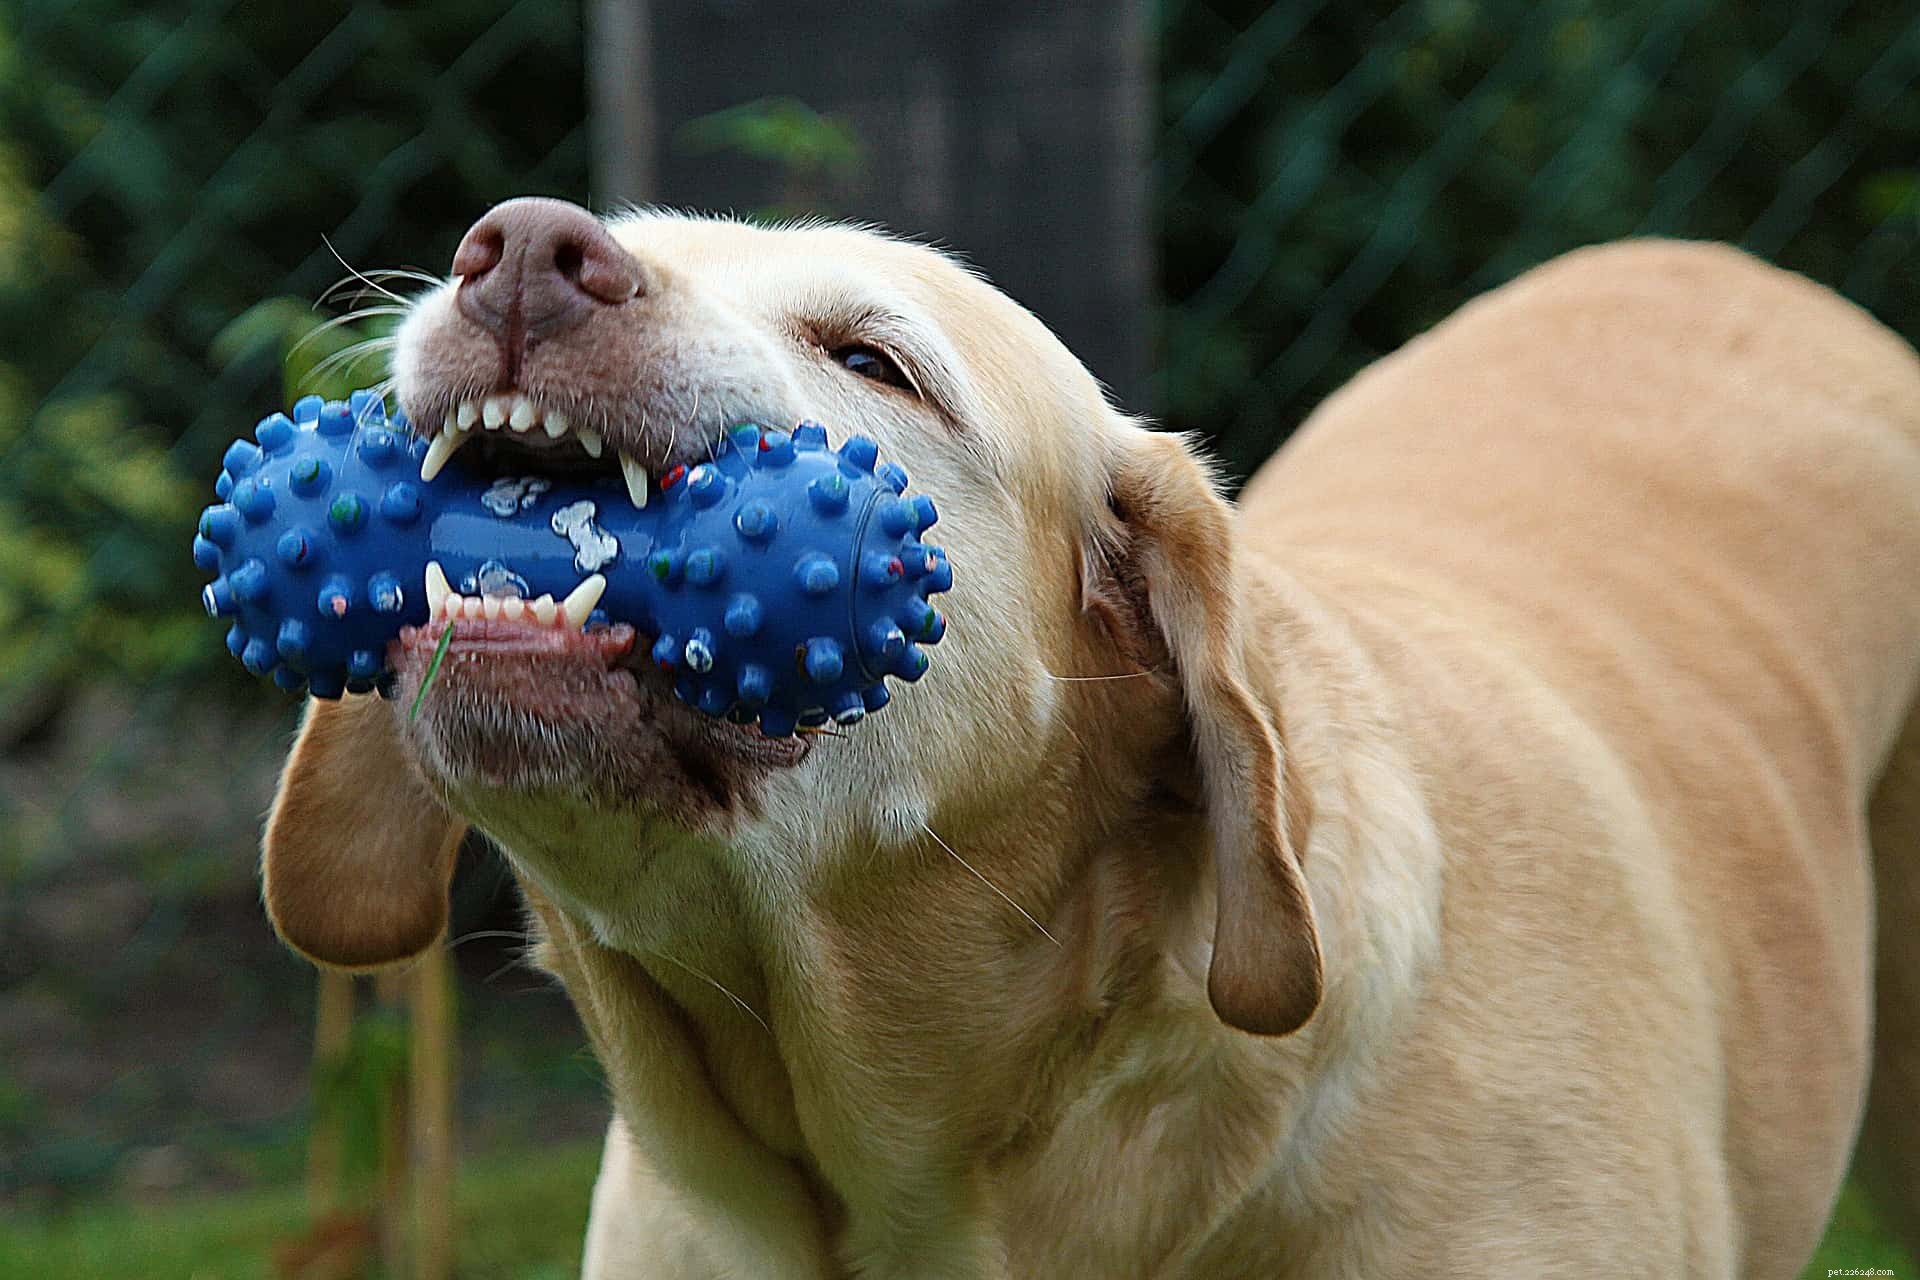 HUNDTRIK:Lär din hund att städa sina leksaker